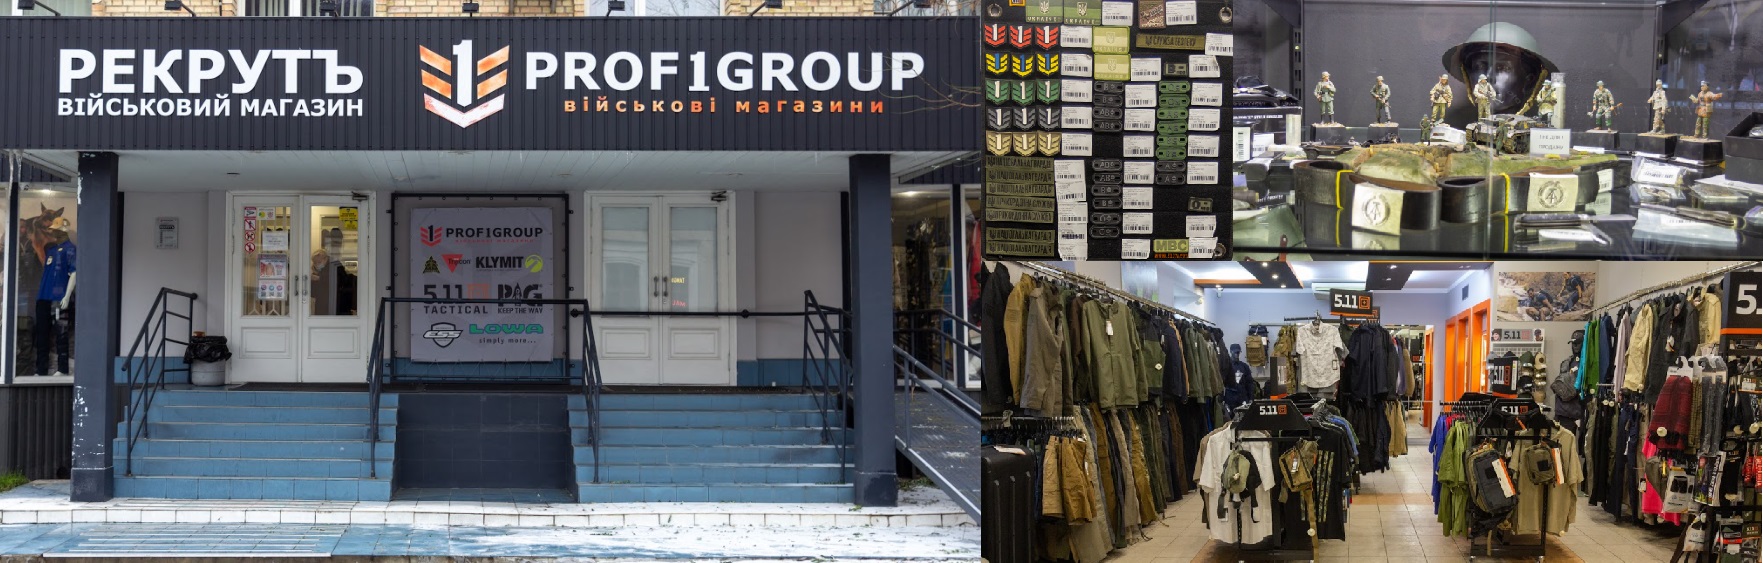 Магазин PROF1Group®, Киев, Рекрутъ, Сеть военных магазинов, снаряжение, обувь, одежда